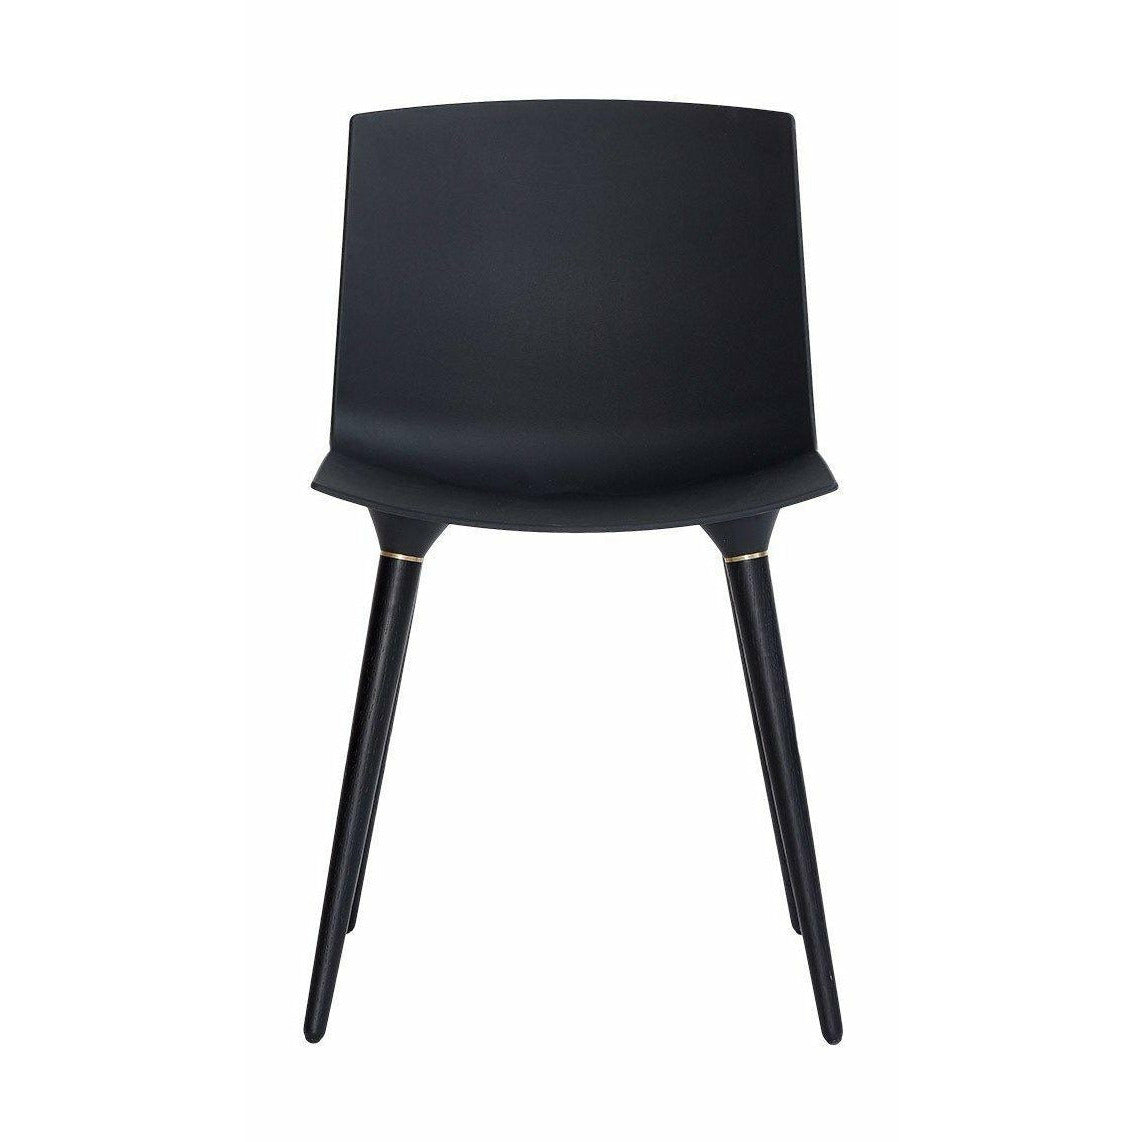 Andersen Furniture Tac sedia in quercia laccata nera, sedile di plastica nera